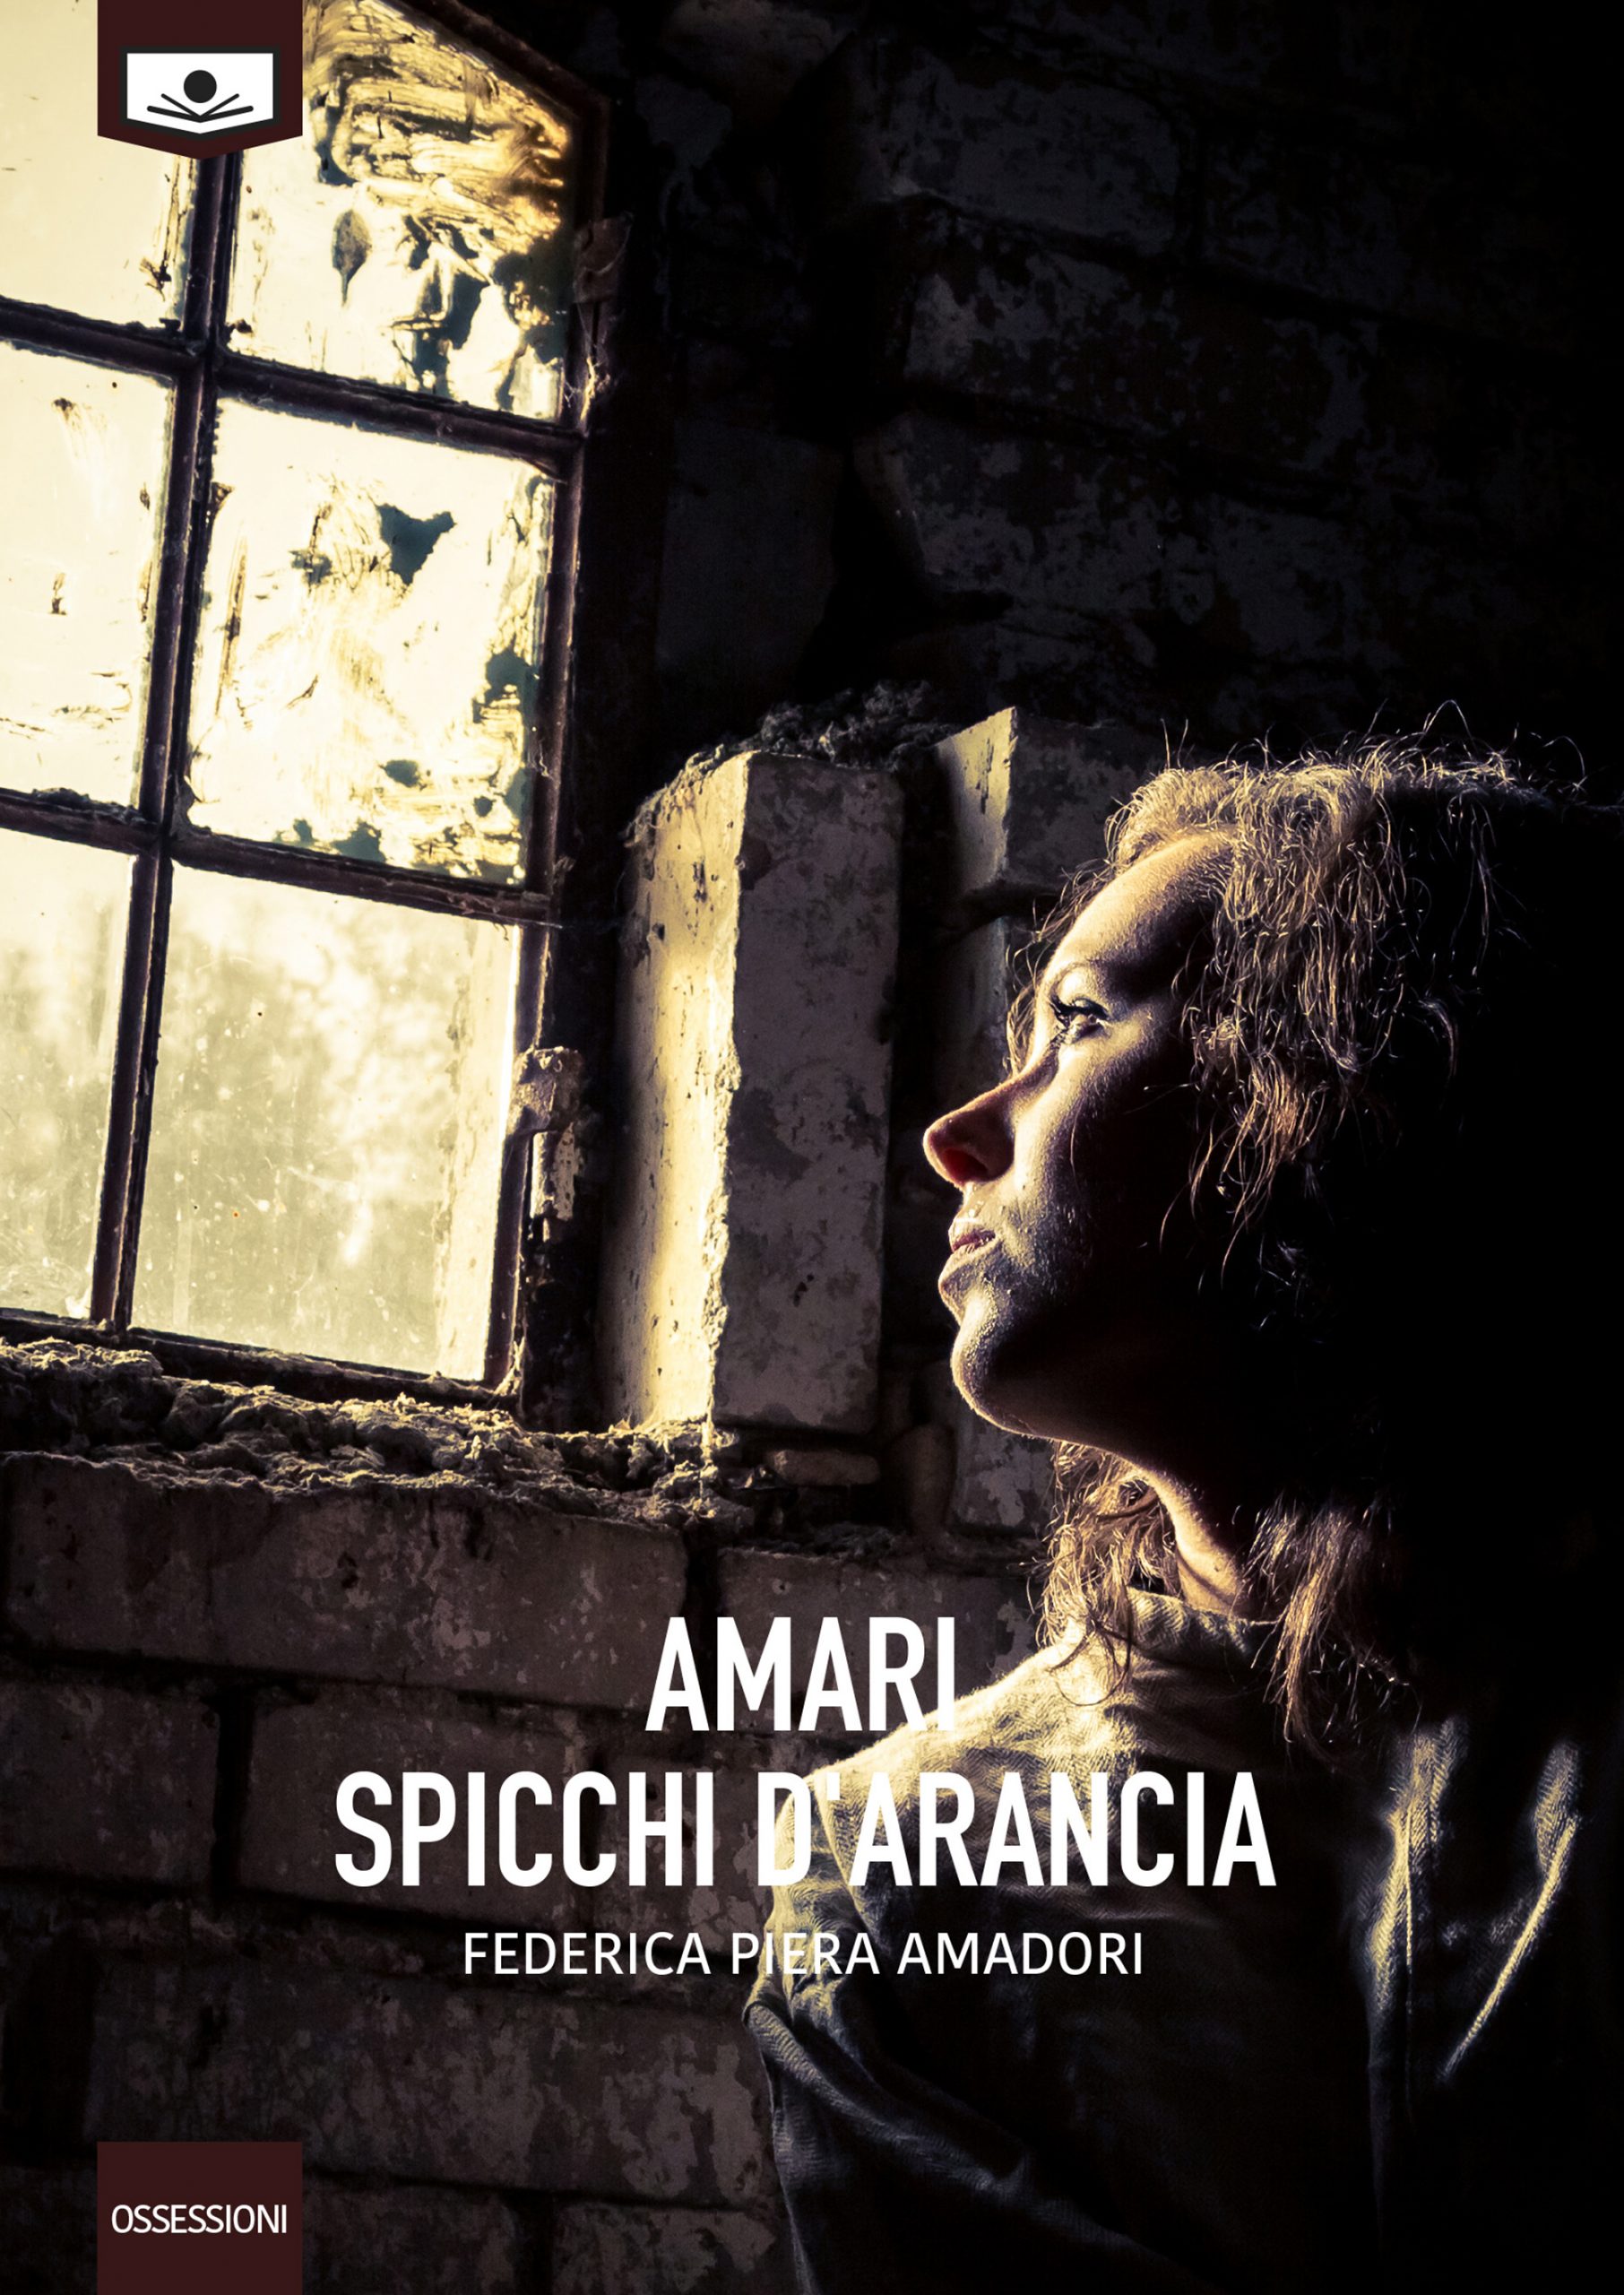 Recensione: "Amari spicchi d'arancia" di Federica Amadori